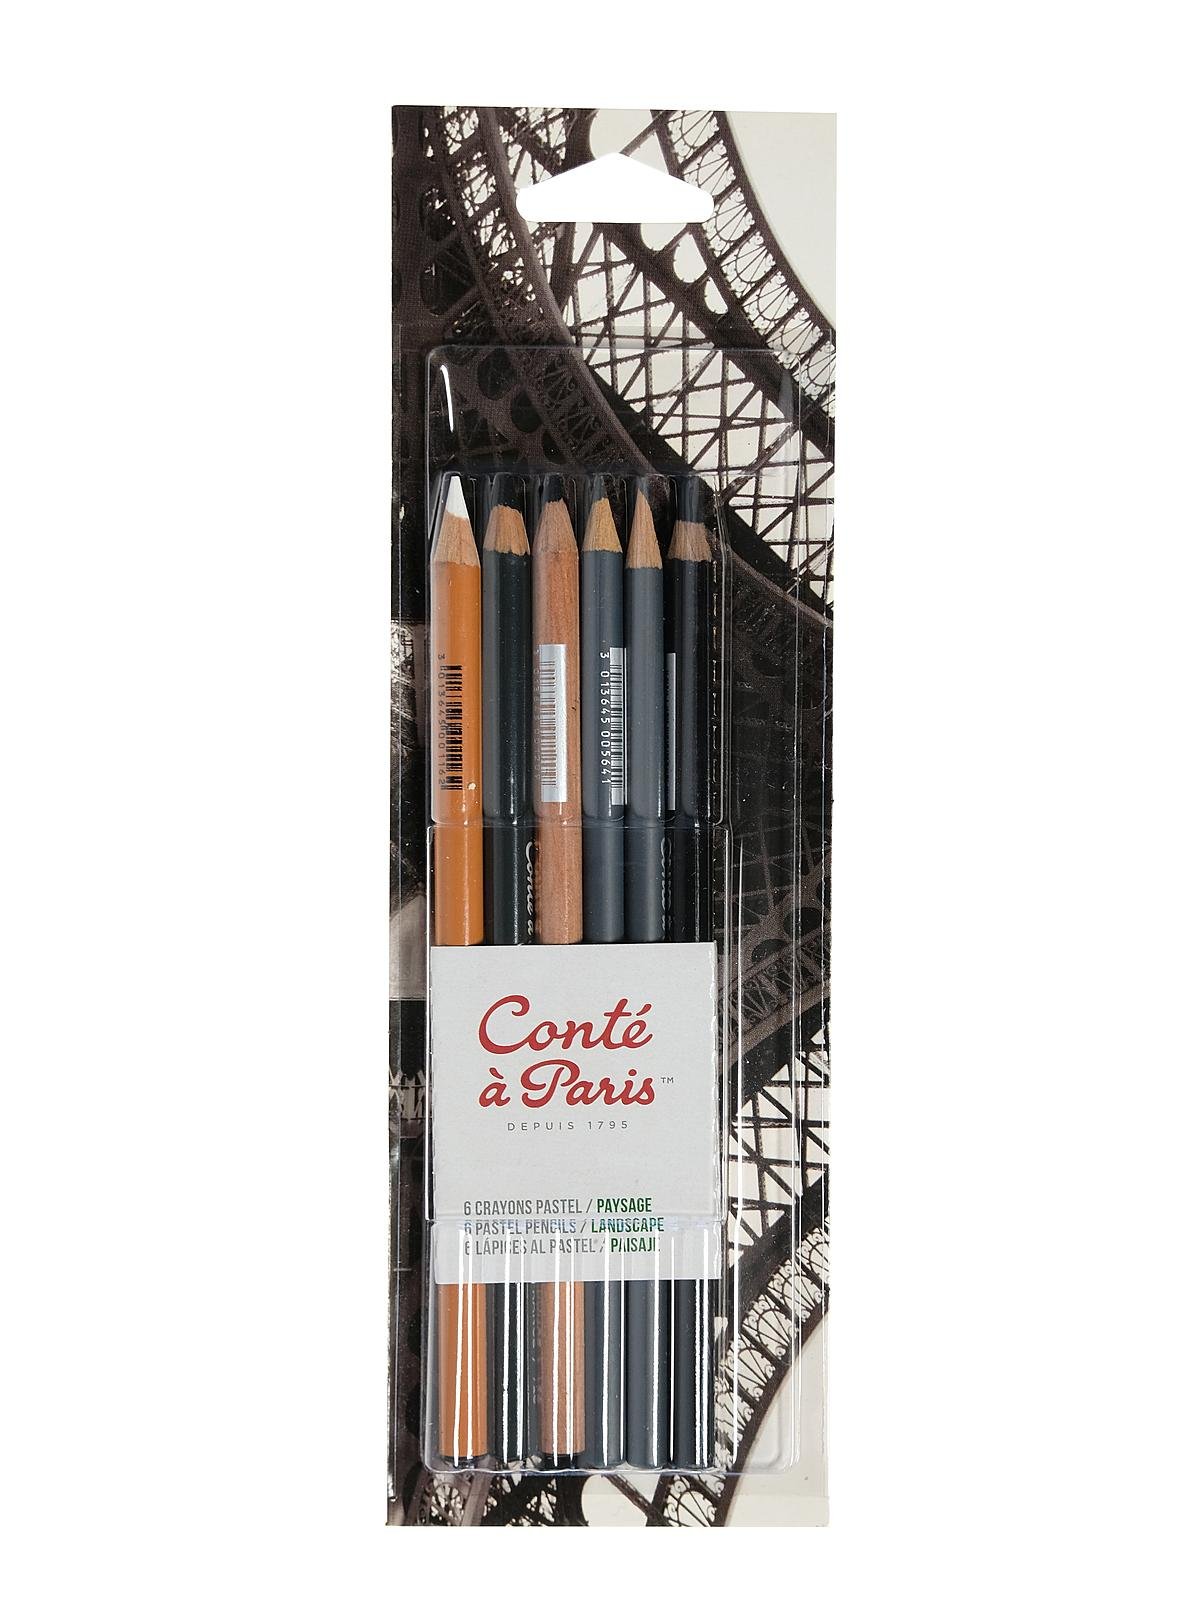 Conte - Pencil Sets